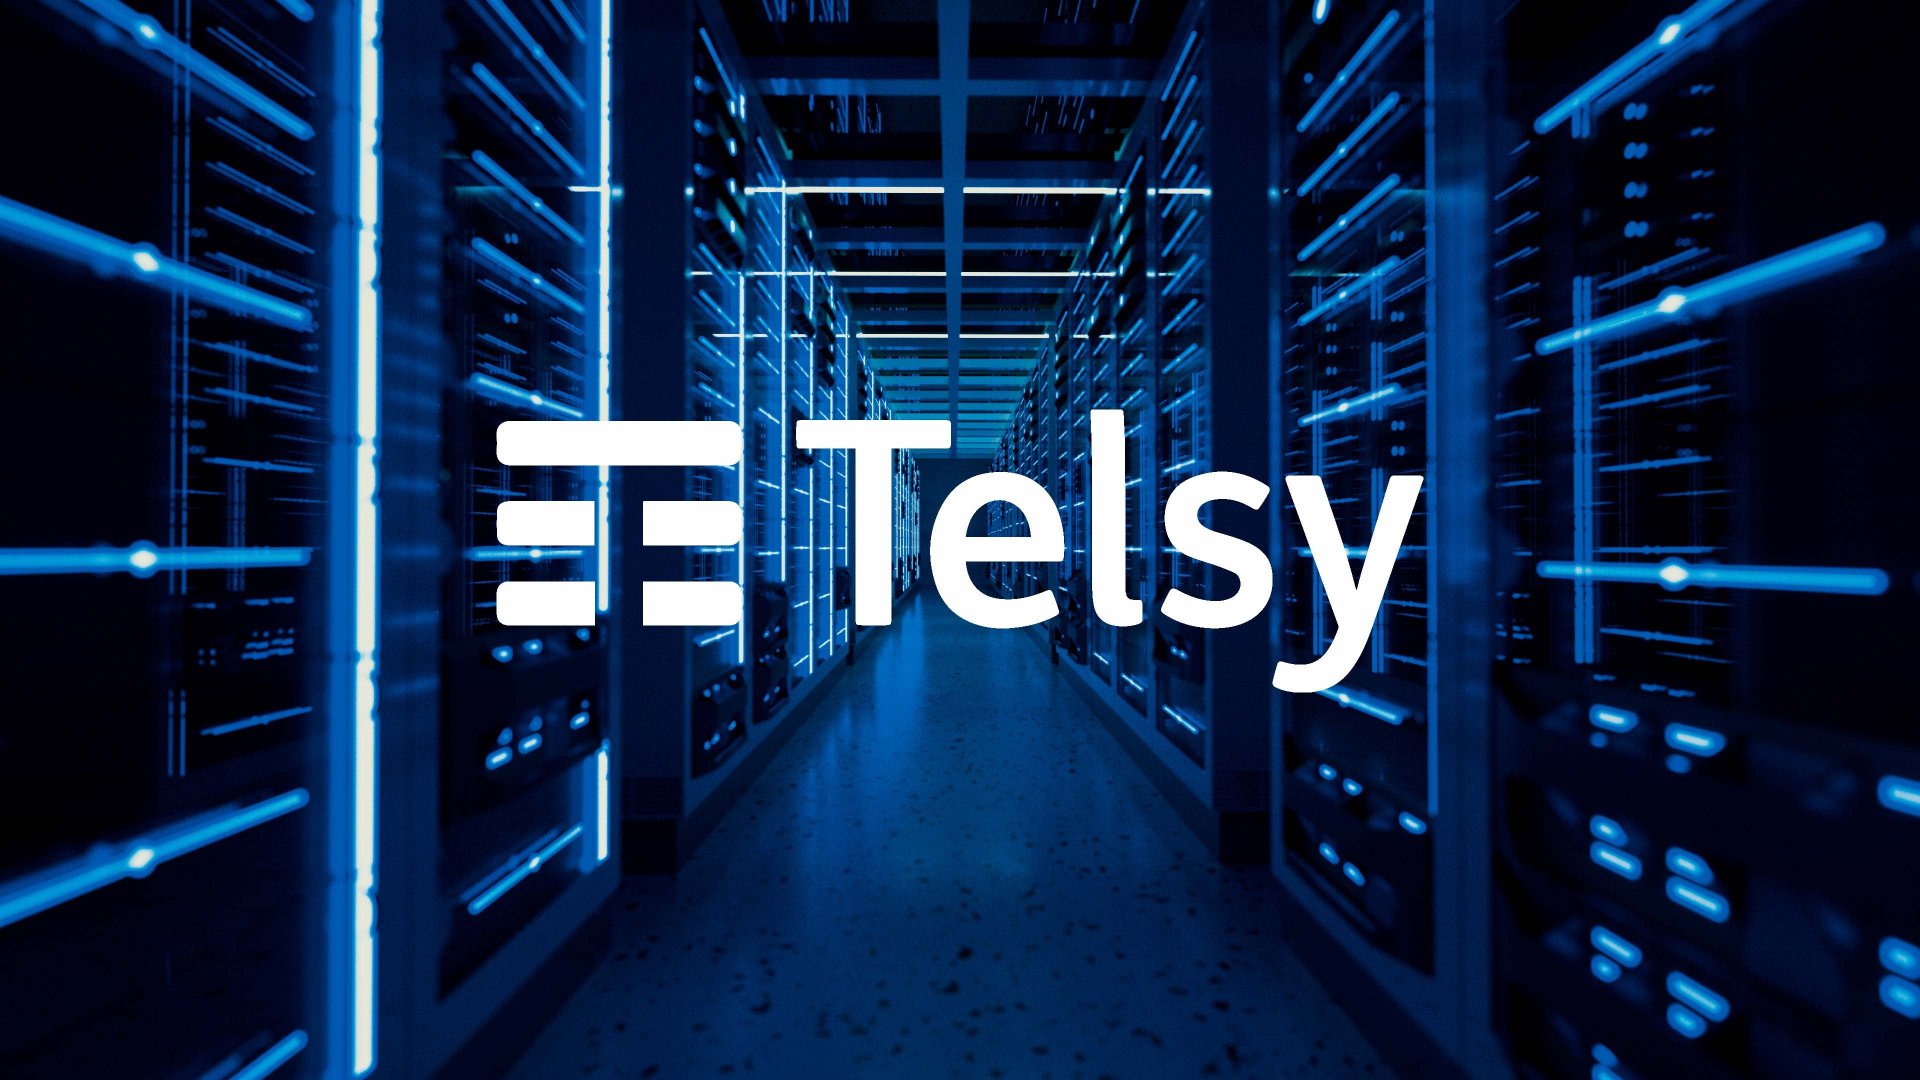 Tim business protezione dispositivi: proteggi computer, server e dispositivi mobili con Telsy